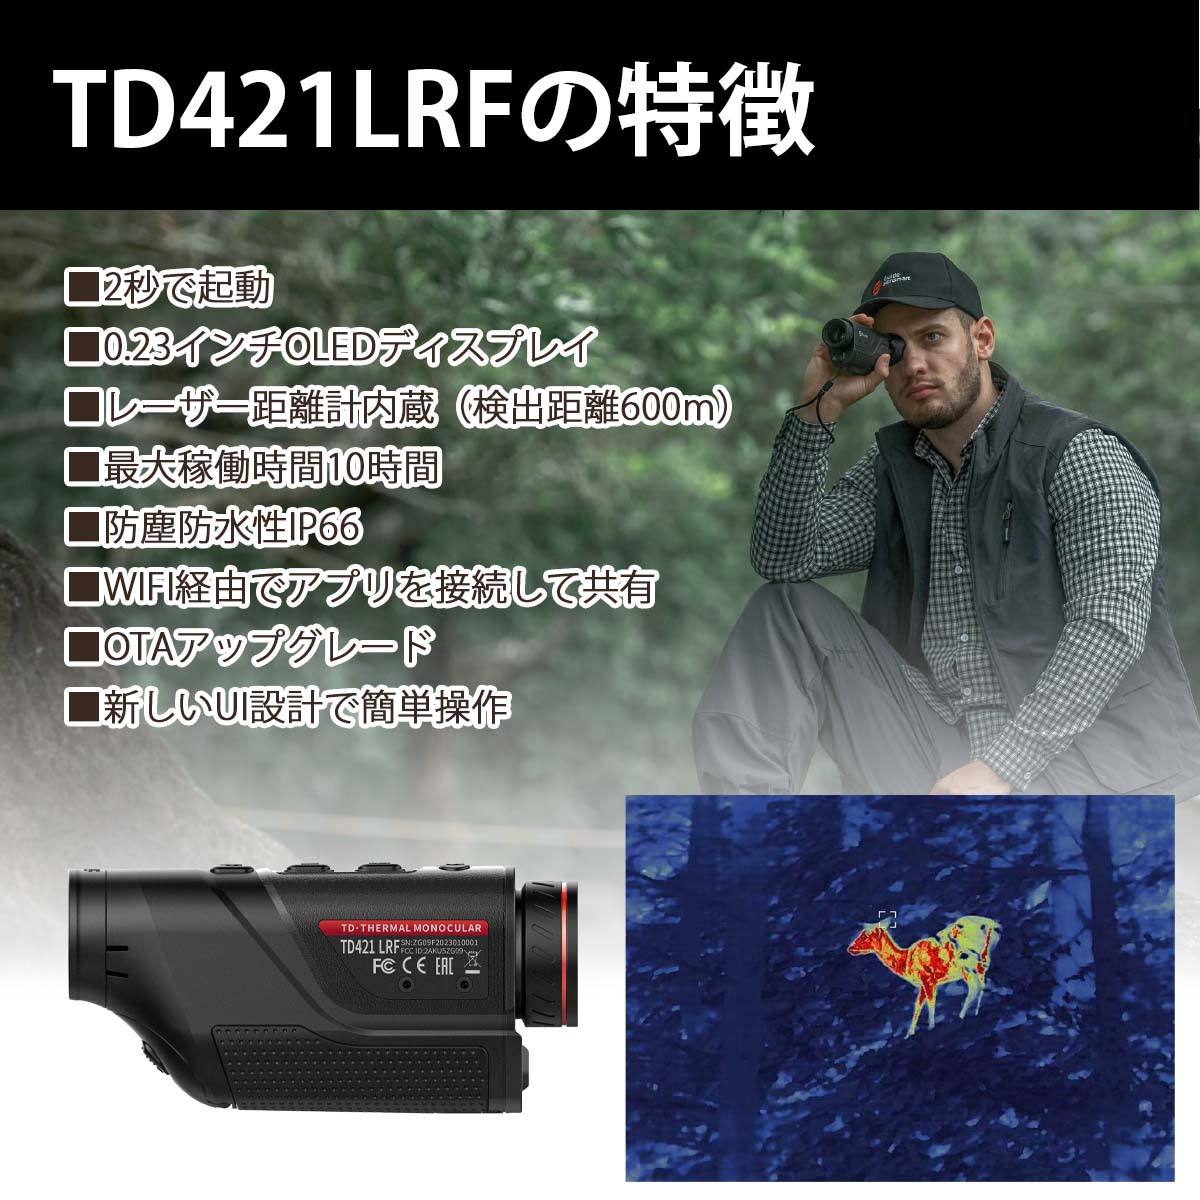 TD421LRF